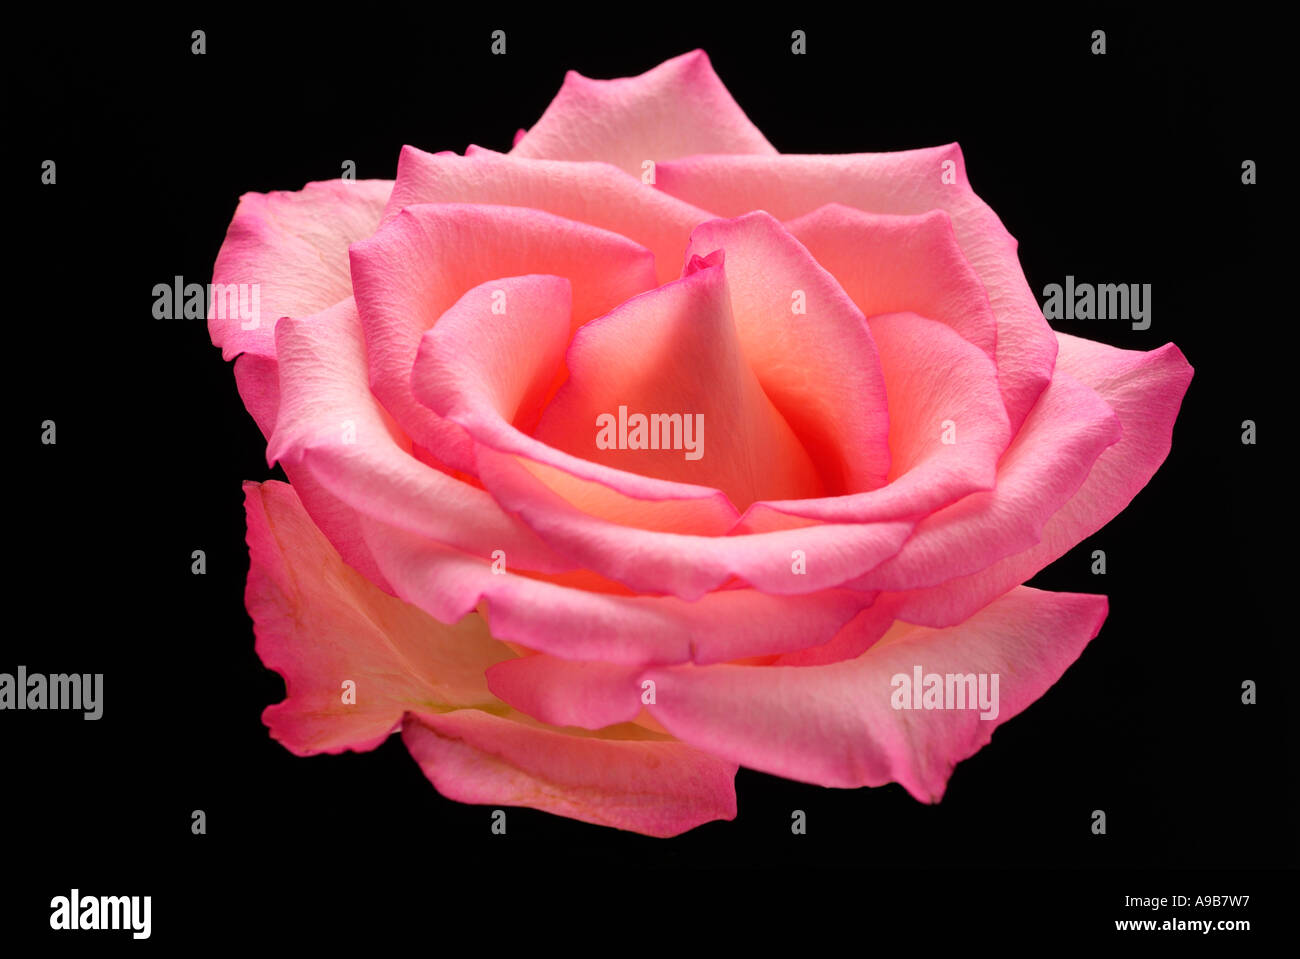 rosa rot schwarz einzelne rose Stamm Blume Natur natürliche Ausschnitt Blatt Fransen Curl Knospe Rand einzelne Romantik romantische Liebe Valentinstag Stockfoto